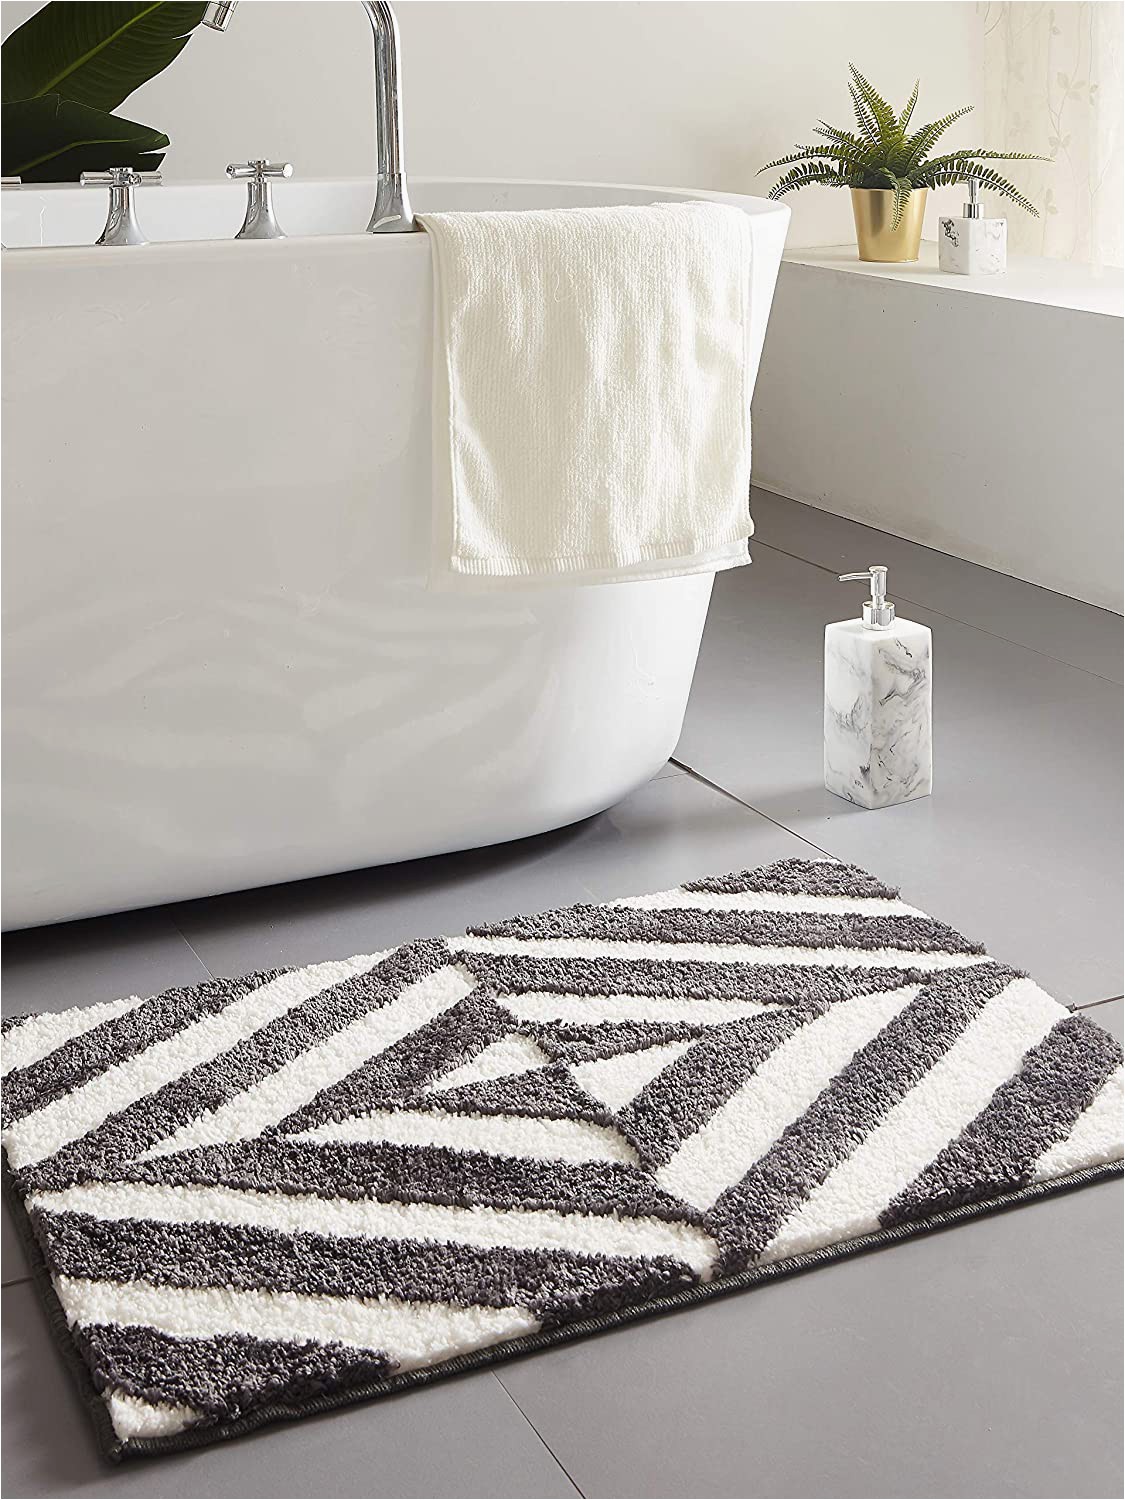 Long Grey Bathroom Rug Amazon Desiderare Thick Fluffy Dark Grey Bath Mat 31